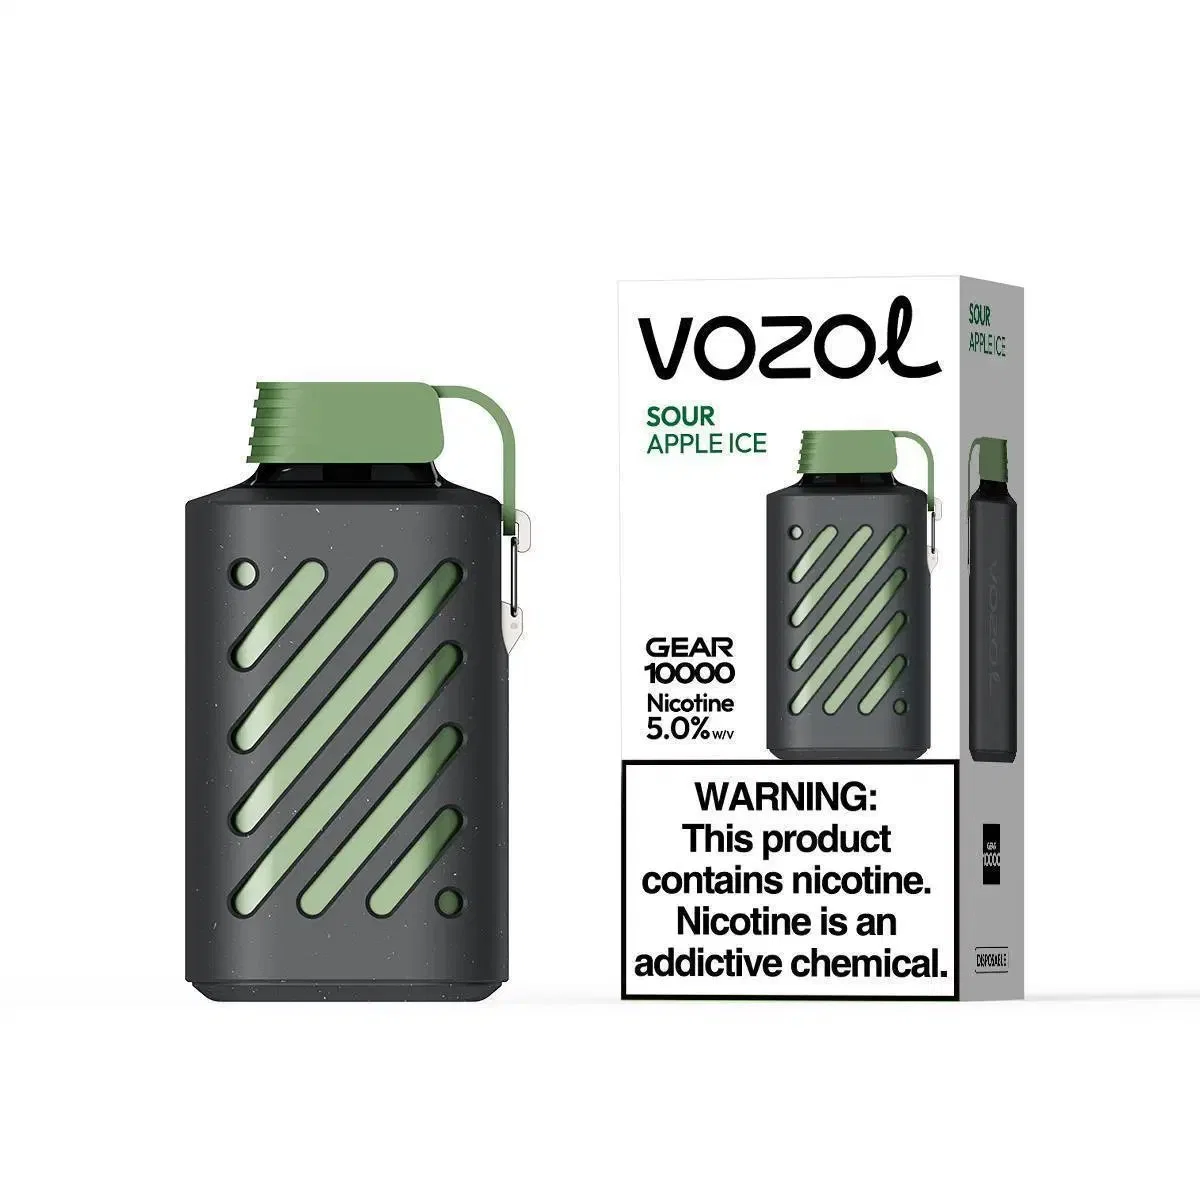 Vozol Gear 10000 Puff Big Cloud Smoking Disposable Vape Wholesale E-Cigarette Wholesale Device Atomizer 10000puffs Empty E-Cig Pod Vaporizer Vape